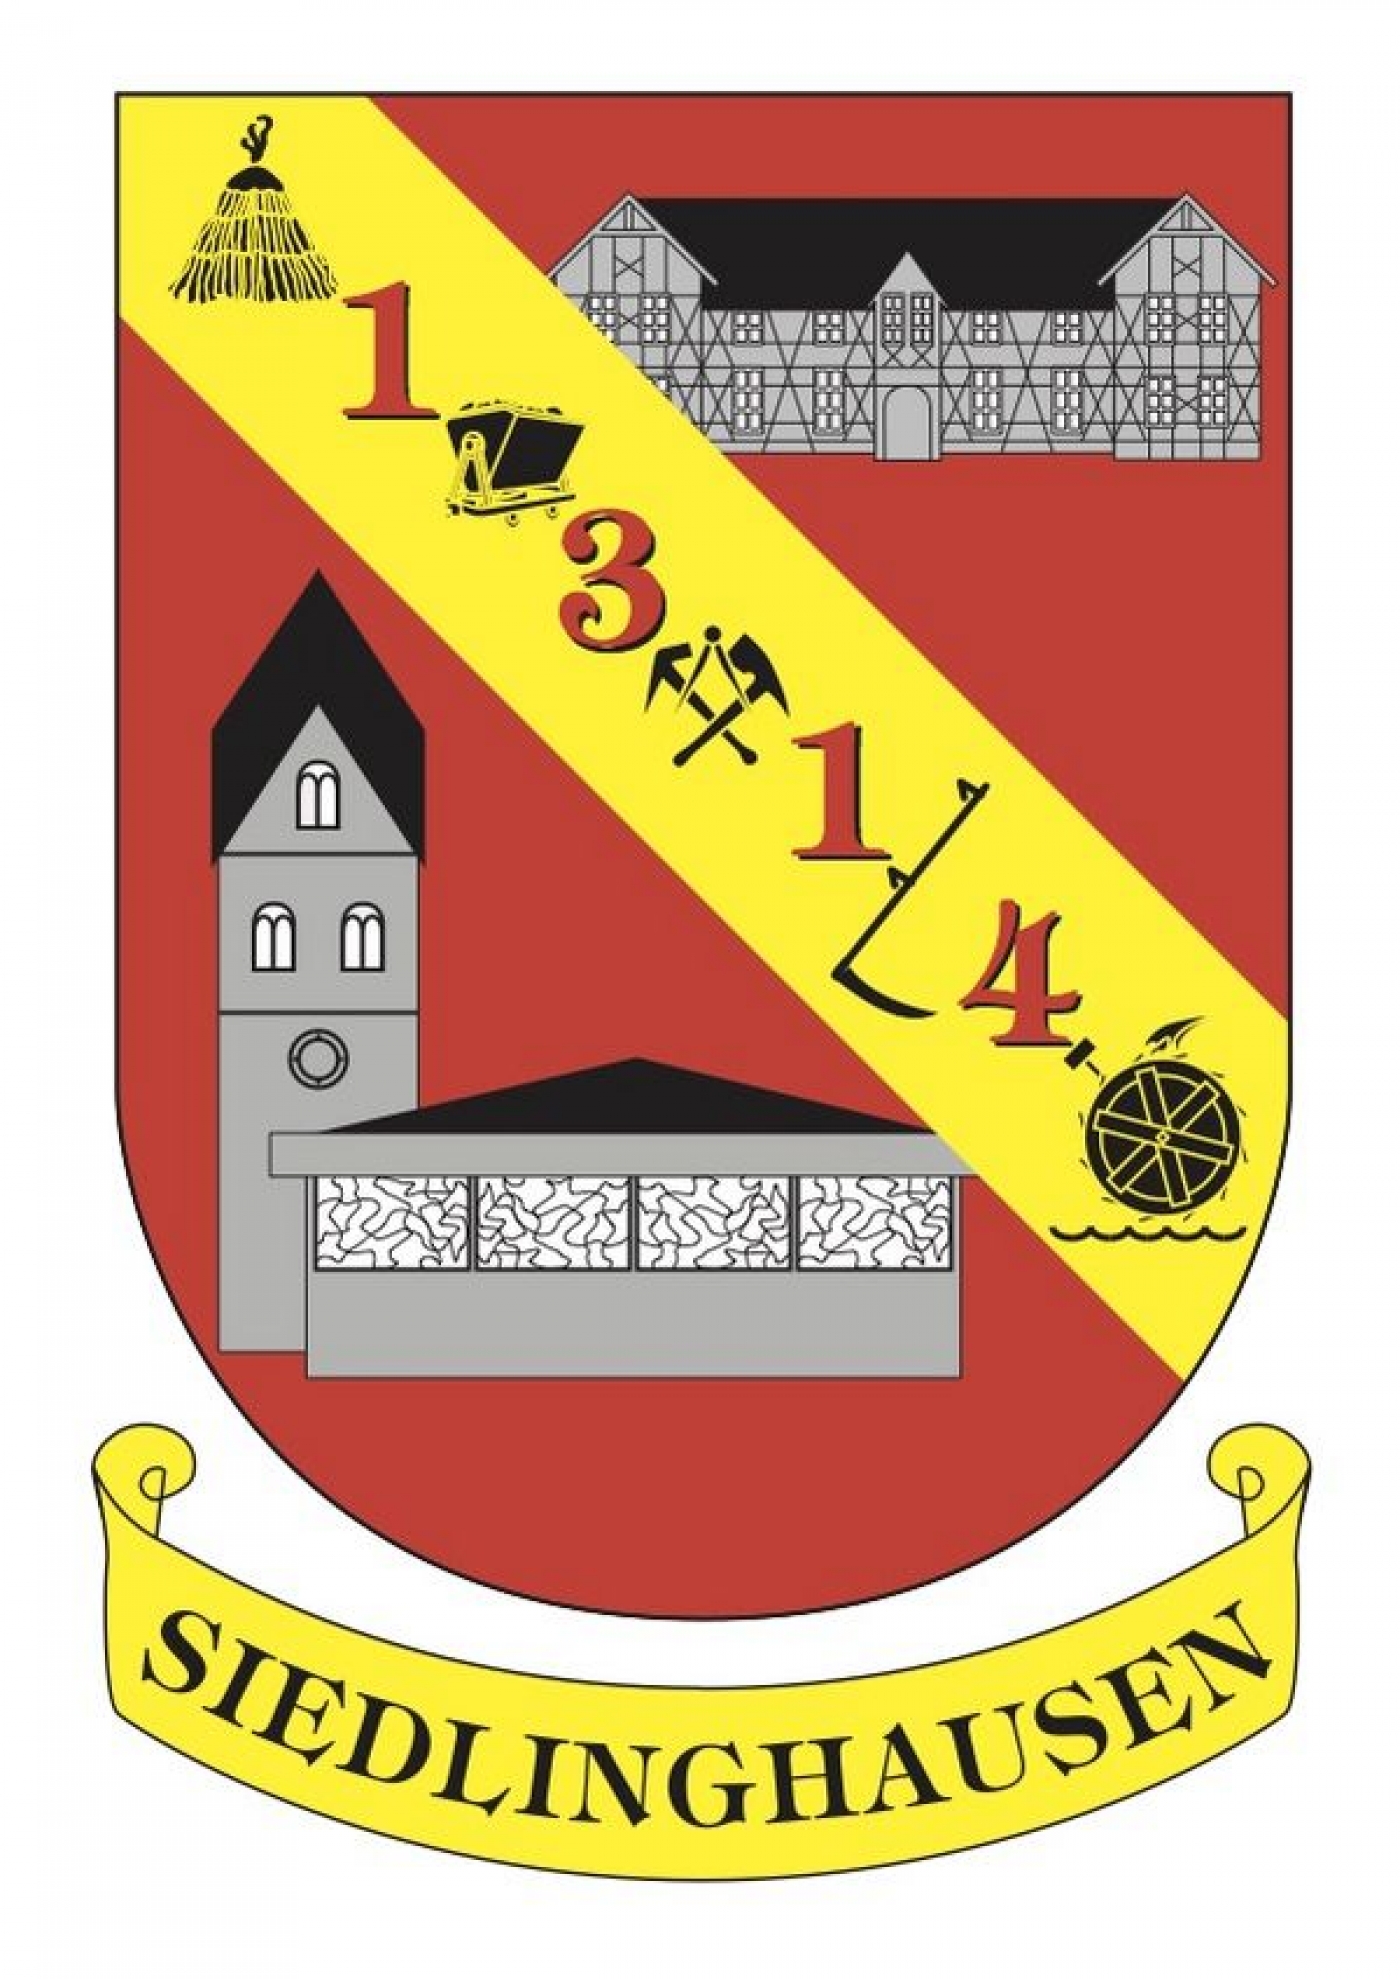 Siedlinghausen